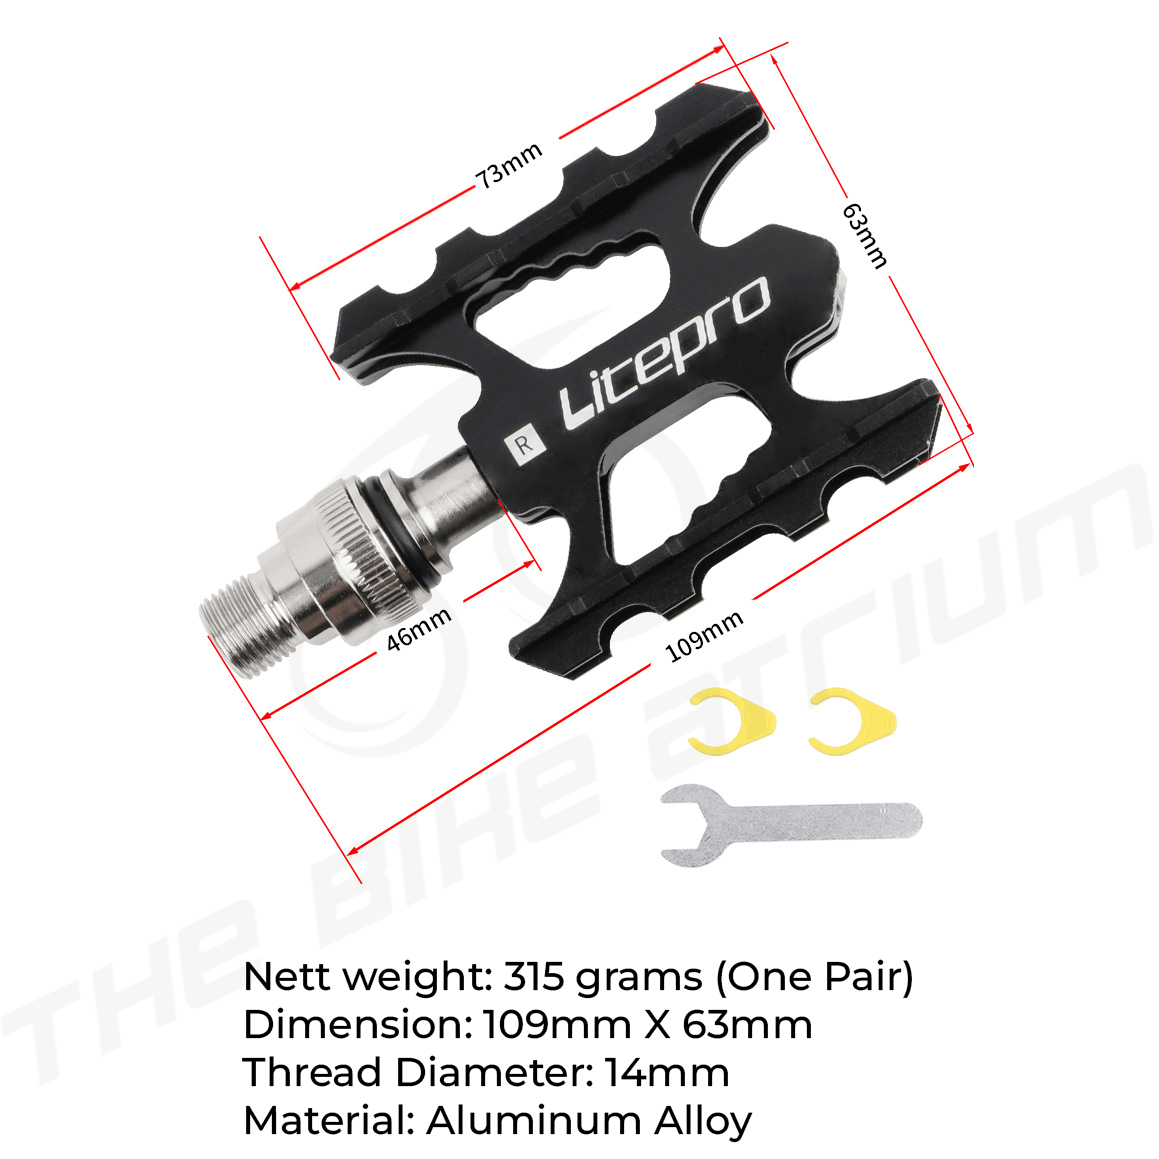 Litepro Detachable Pedals